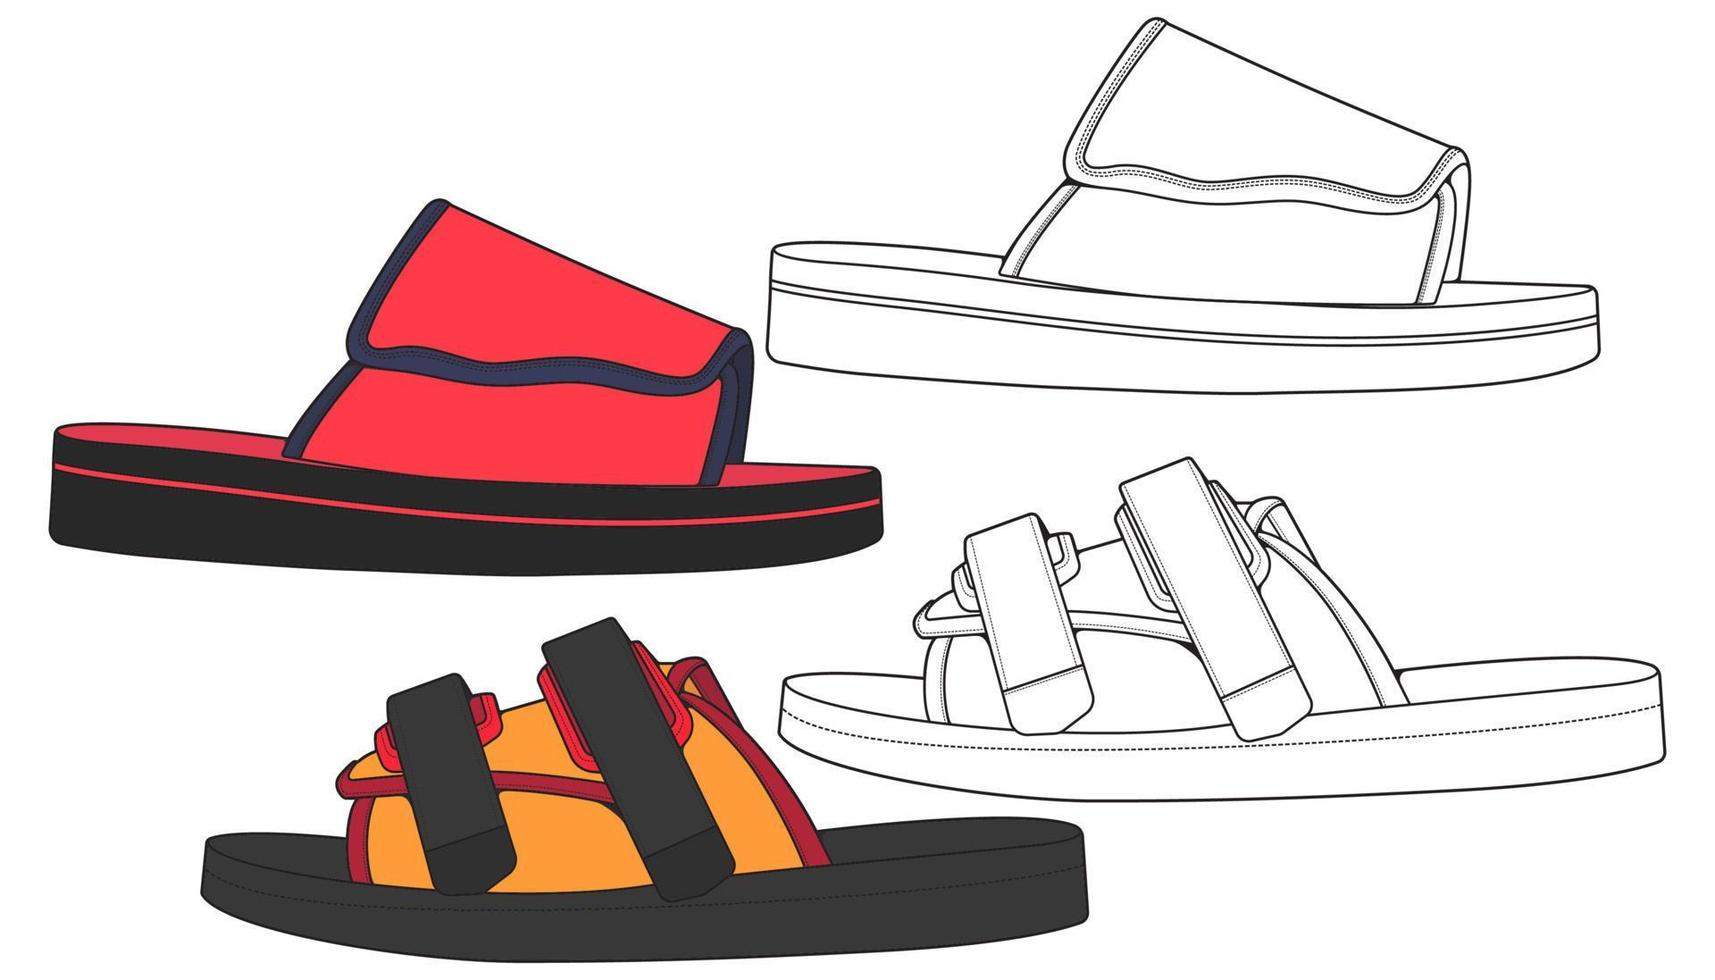 rem sandaler teckning vektor, rem sandaler stil, vektor illustration. med bakgrund